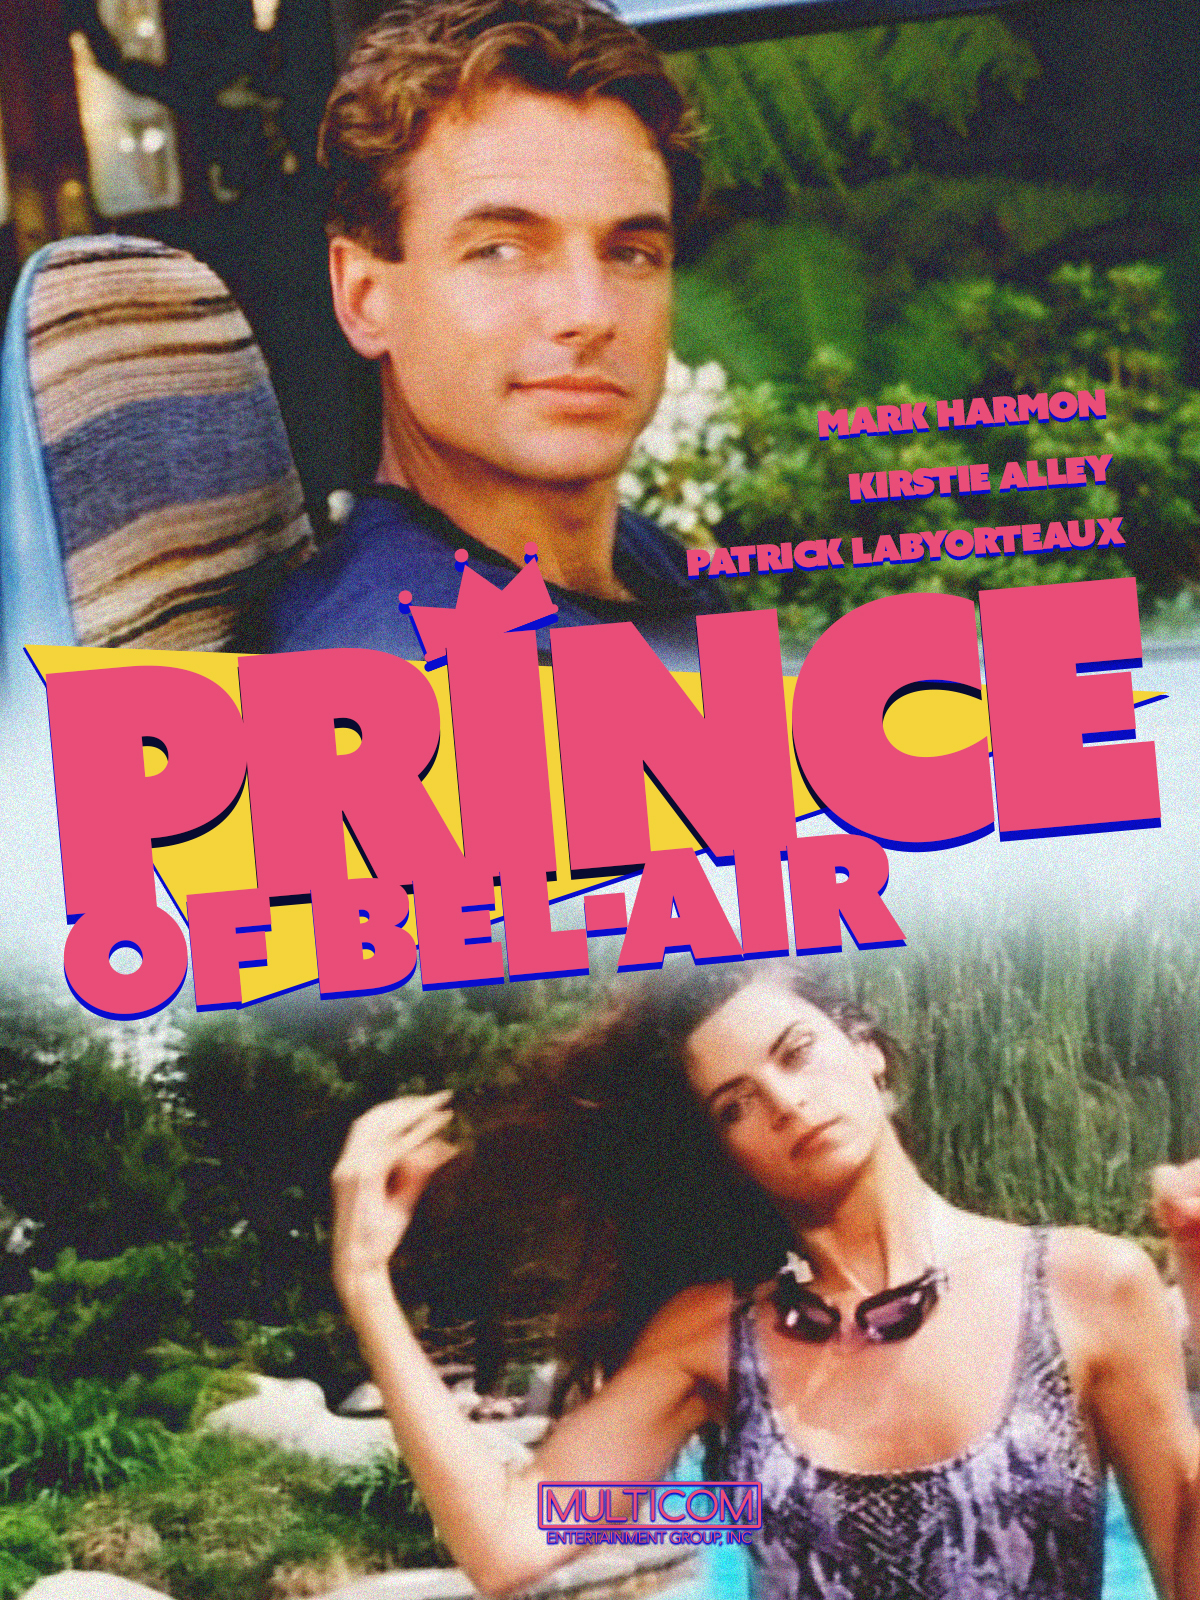 Prince of Bel Air (1986) Screenshot 1 